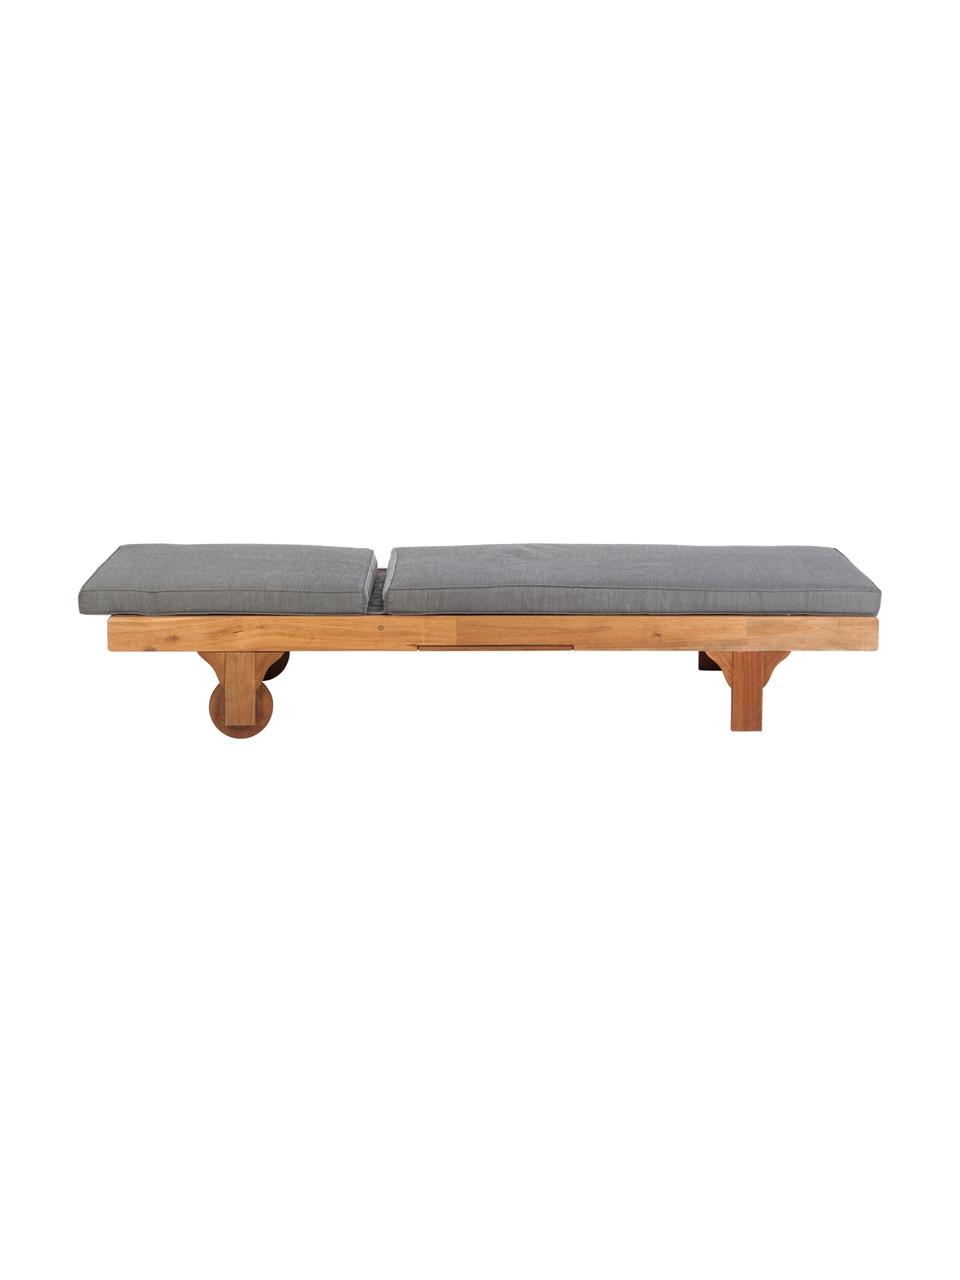 Gartenliege Somerset mit Auflage und ausziehbarem Tisch, Akazienholz, geölt, Akazienholz, 70 x 200 cm